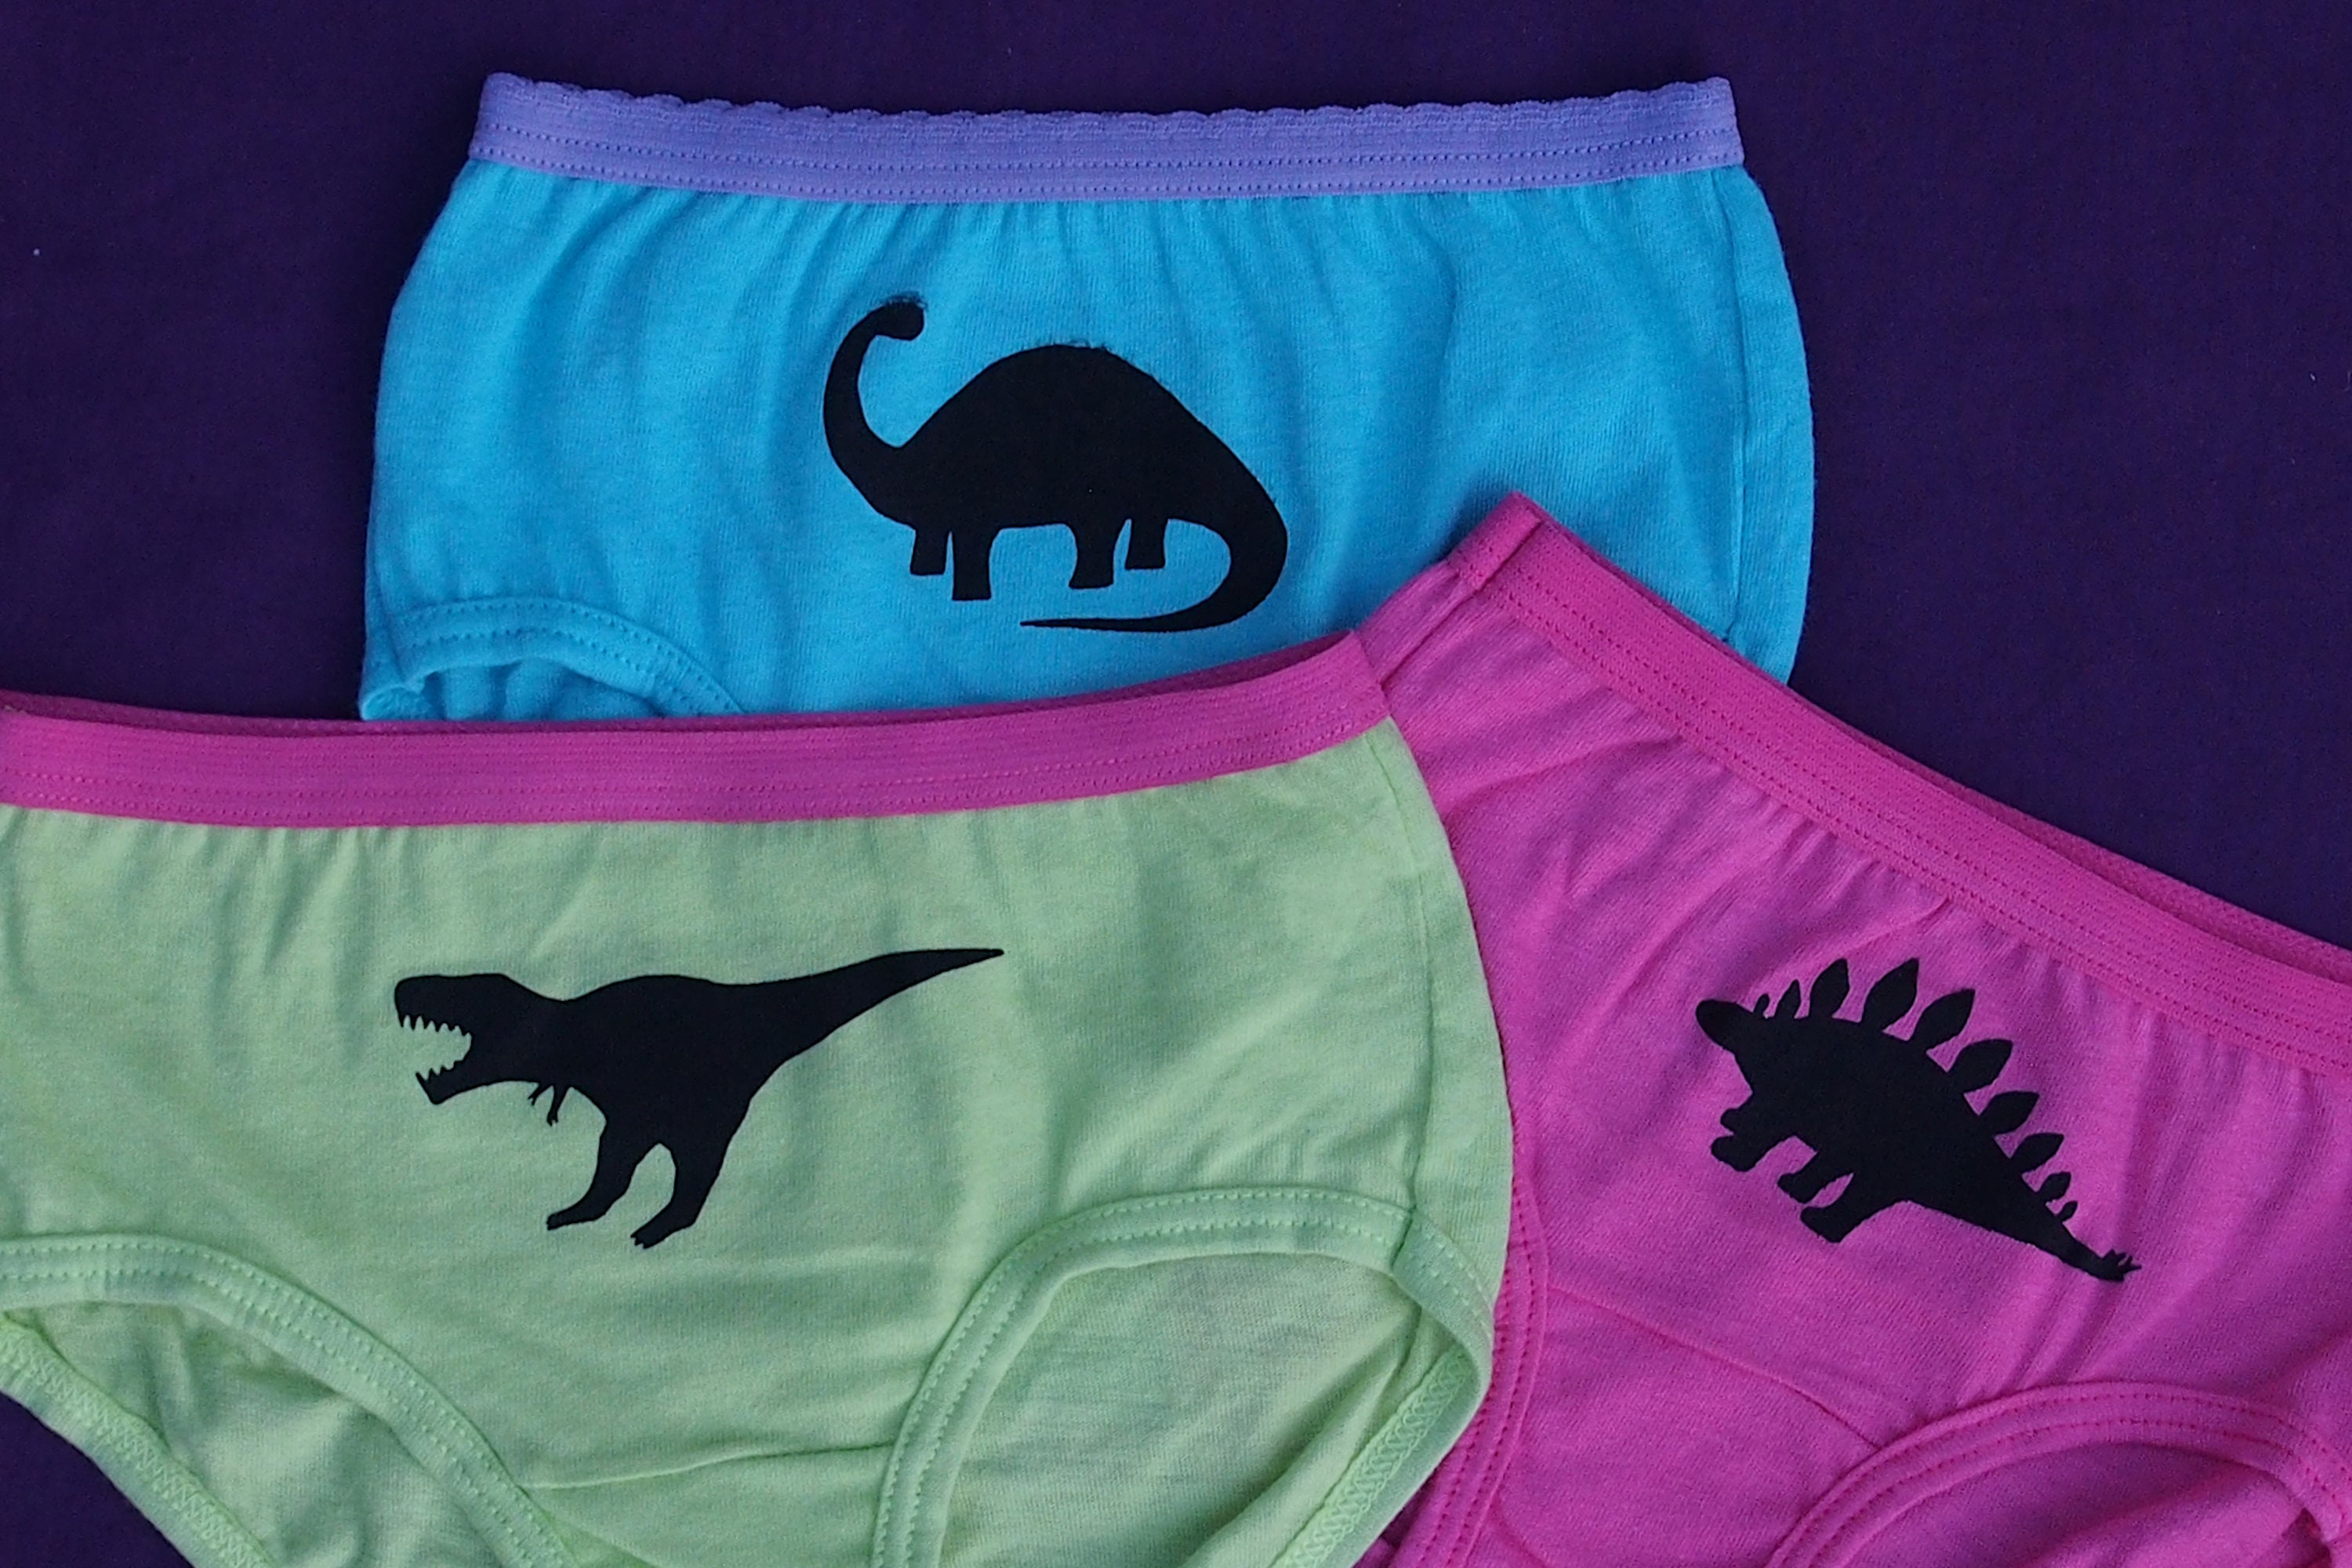 Esaierr Boys Dinosaur Boxer Briefs Underwear for Toddler Kids,Baby  Breathable Soft Cotton Briefs Dinosaur Training Boyshorts Little Boys  Underwear 3Pack for 3-8 Years Old 